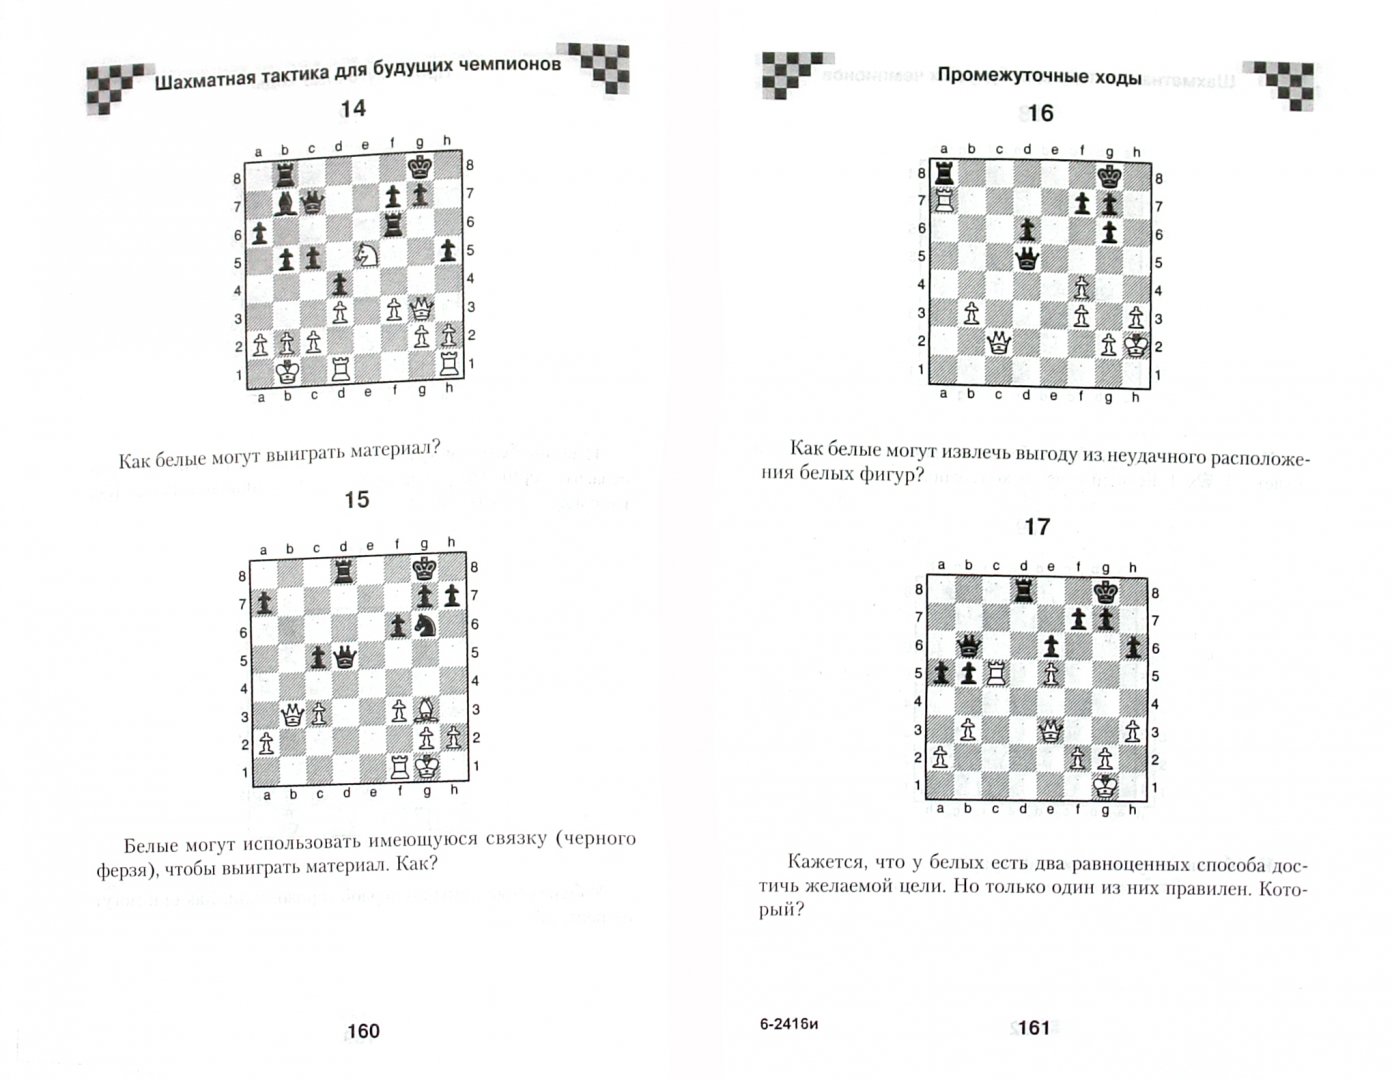 Иллюстрация 1 из 15 для Шахматная тактика для будущих чемпионов - Полгар, Труонг | Лабиринт - книги. Источник: Лабиринт